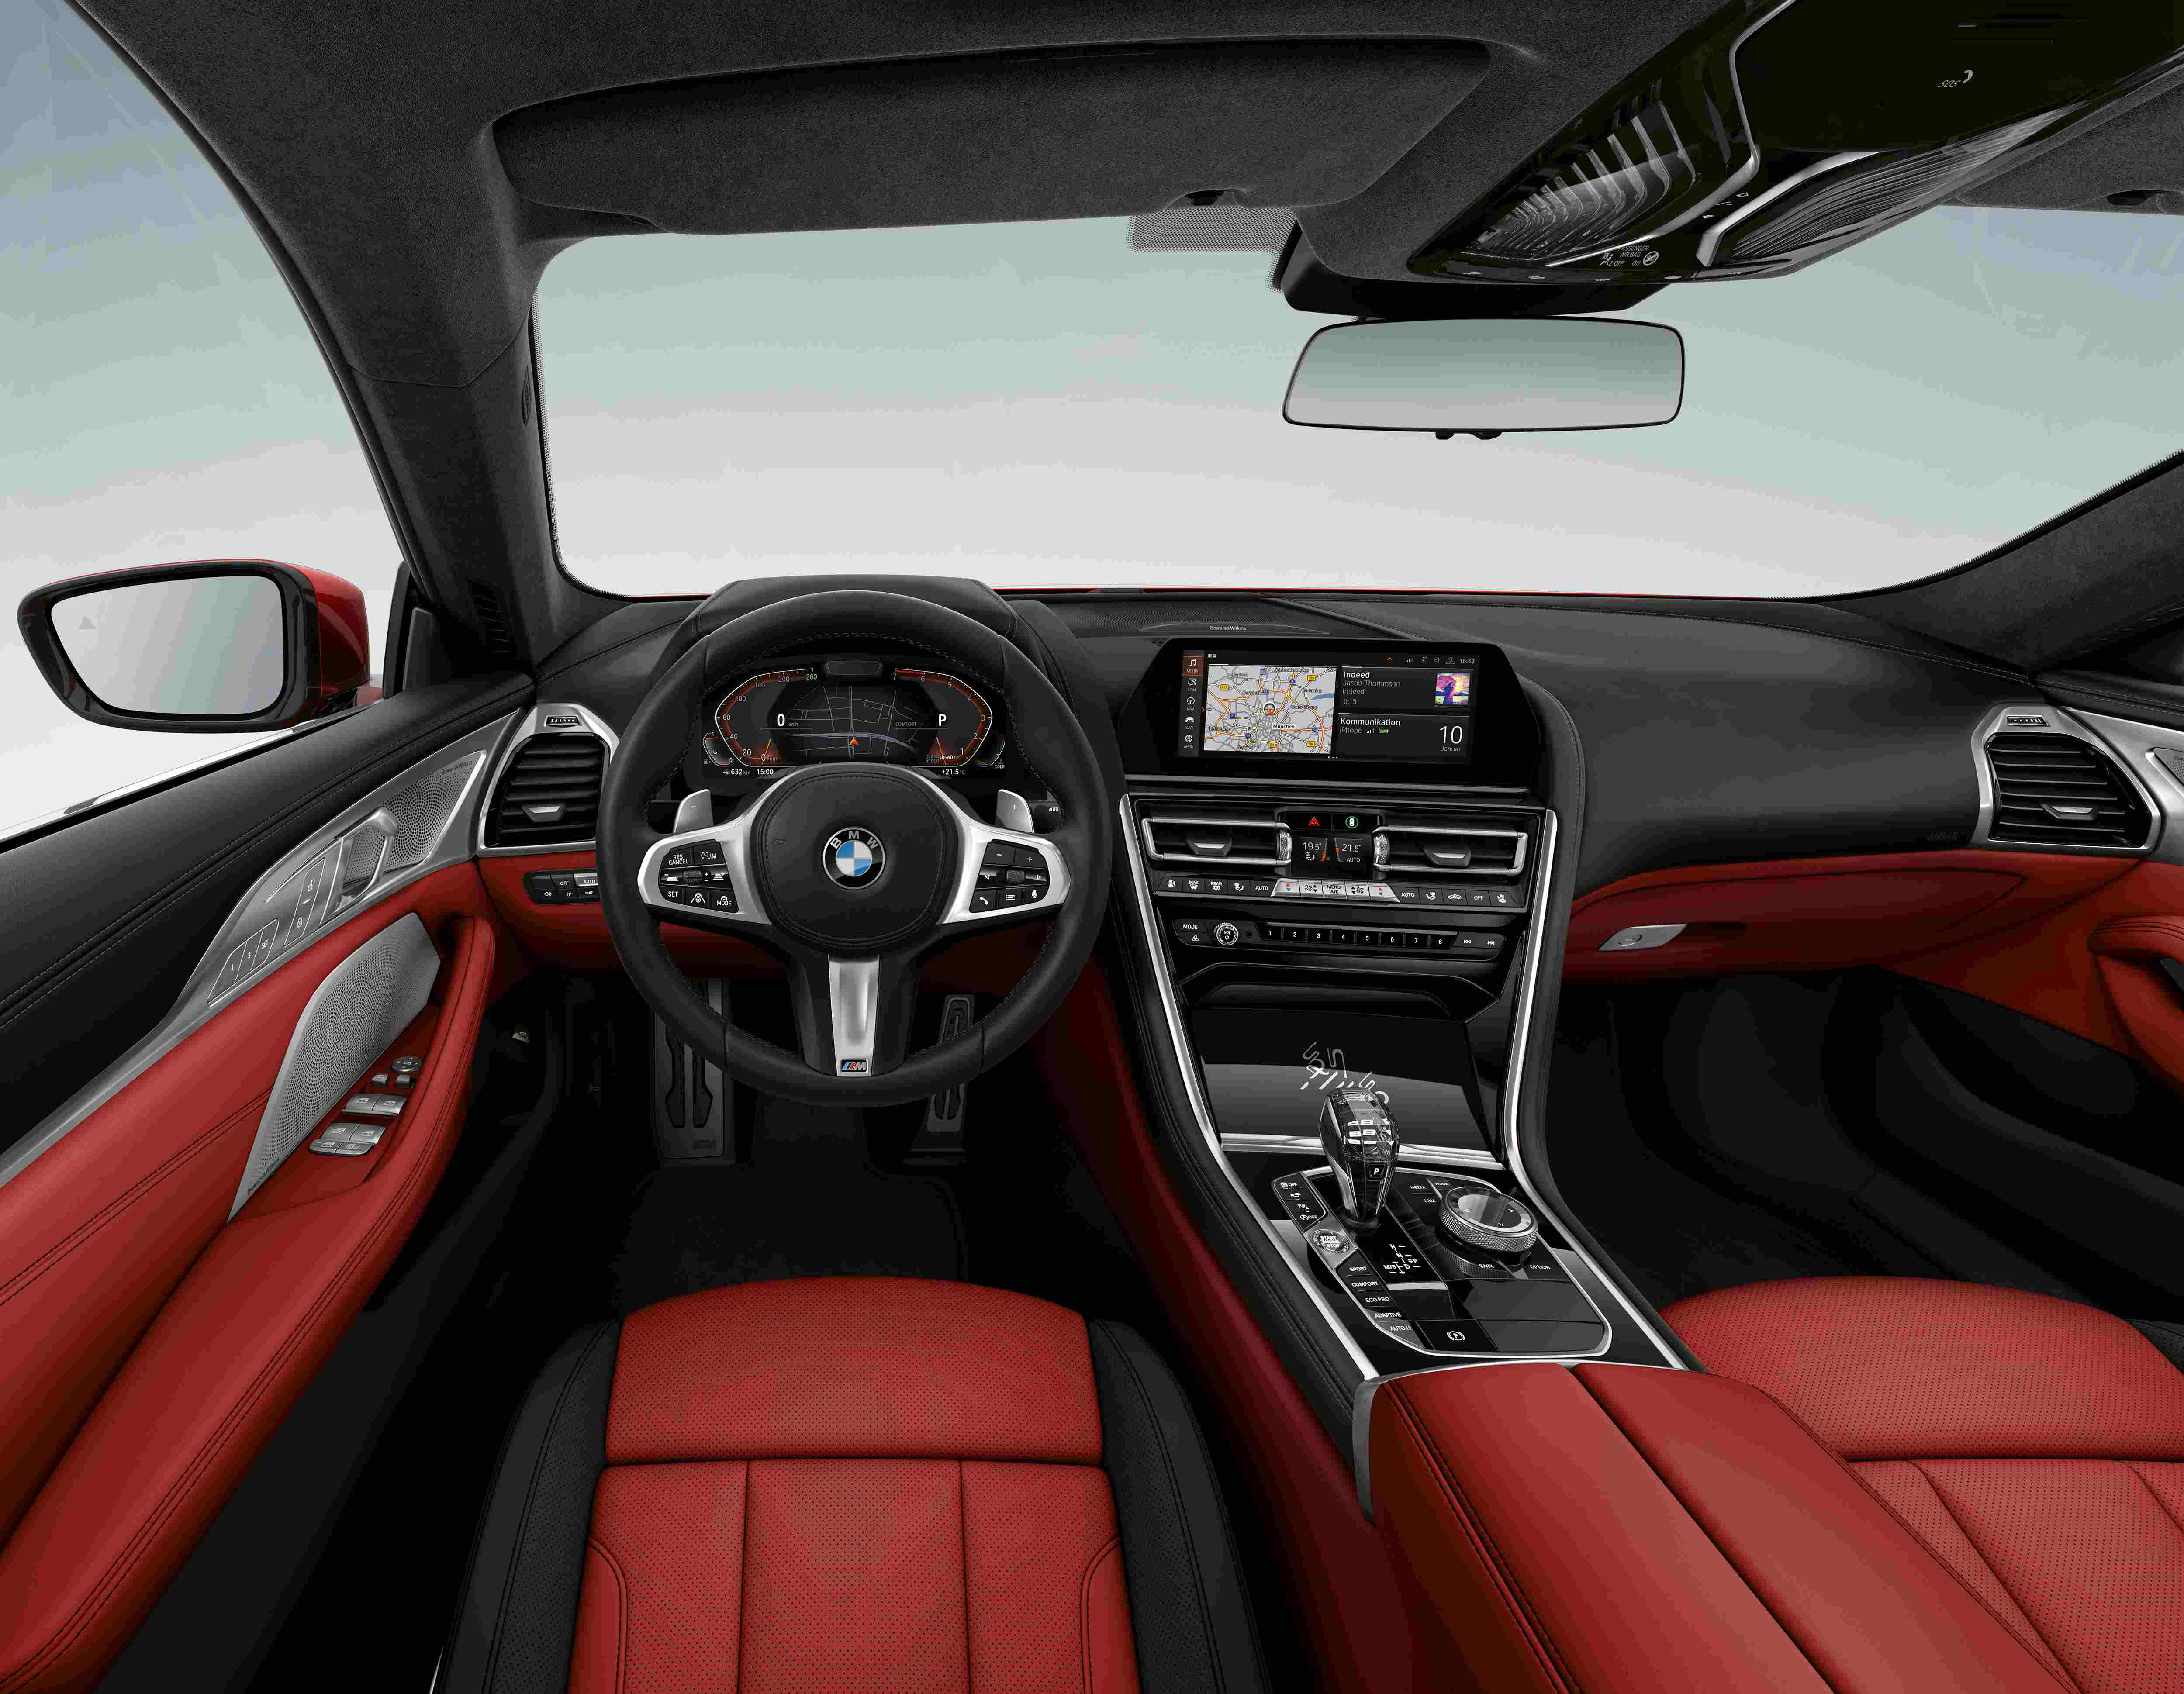 以个性化定制开创运动豪华新境 全新BMW 8系烈焰典藏版燃情上市